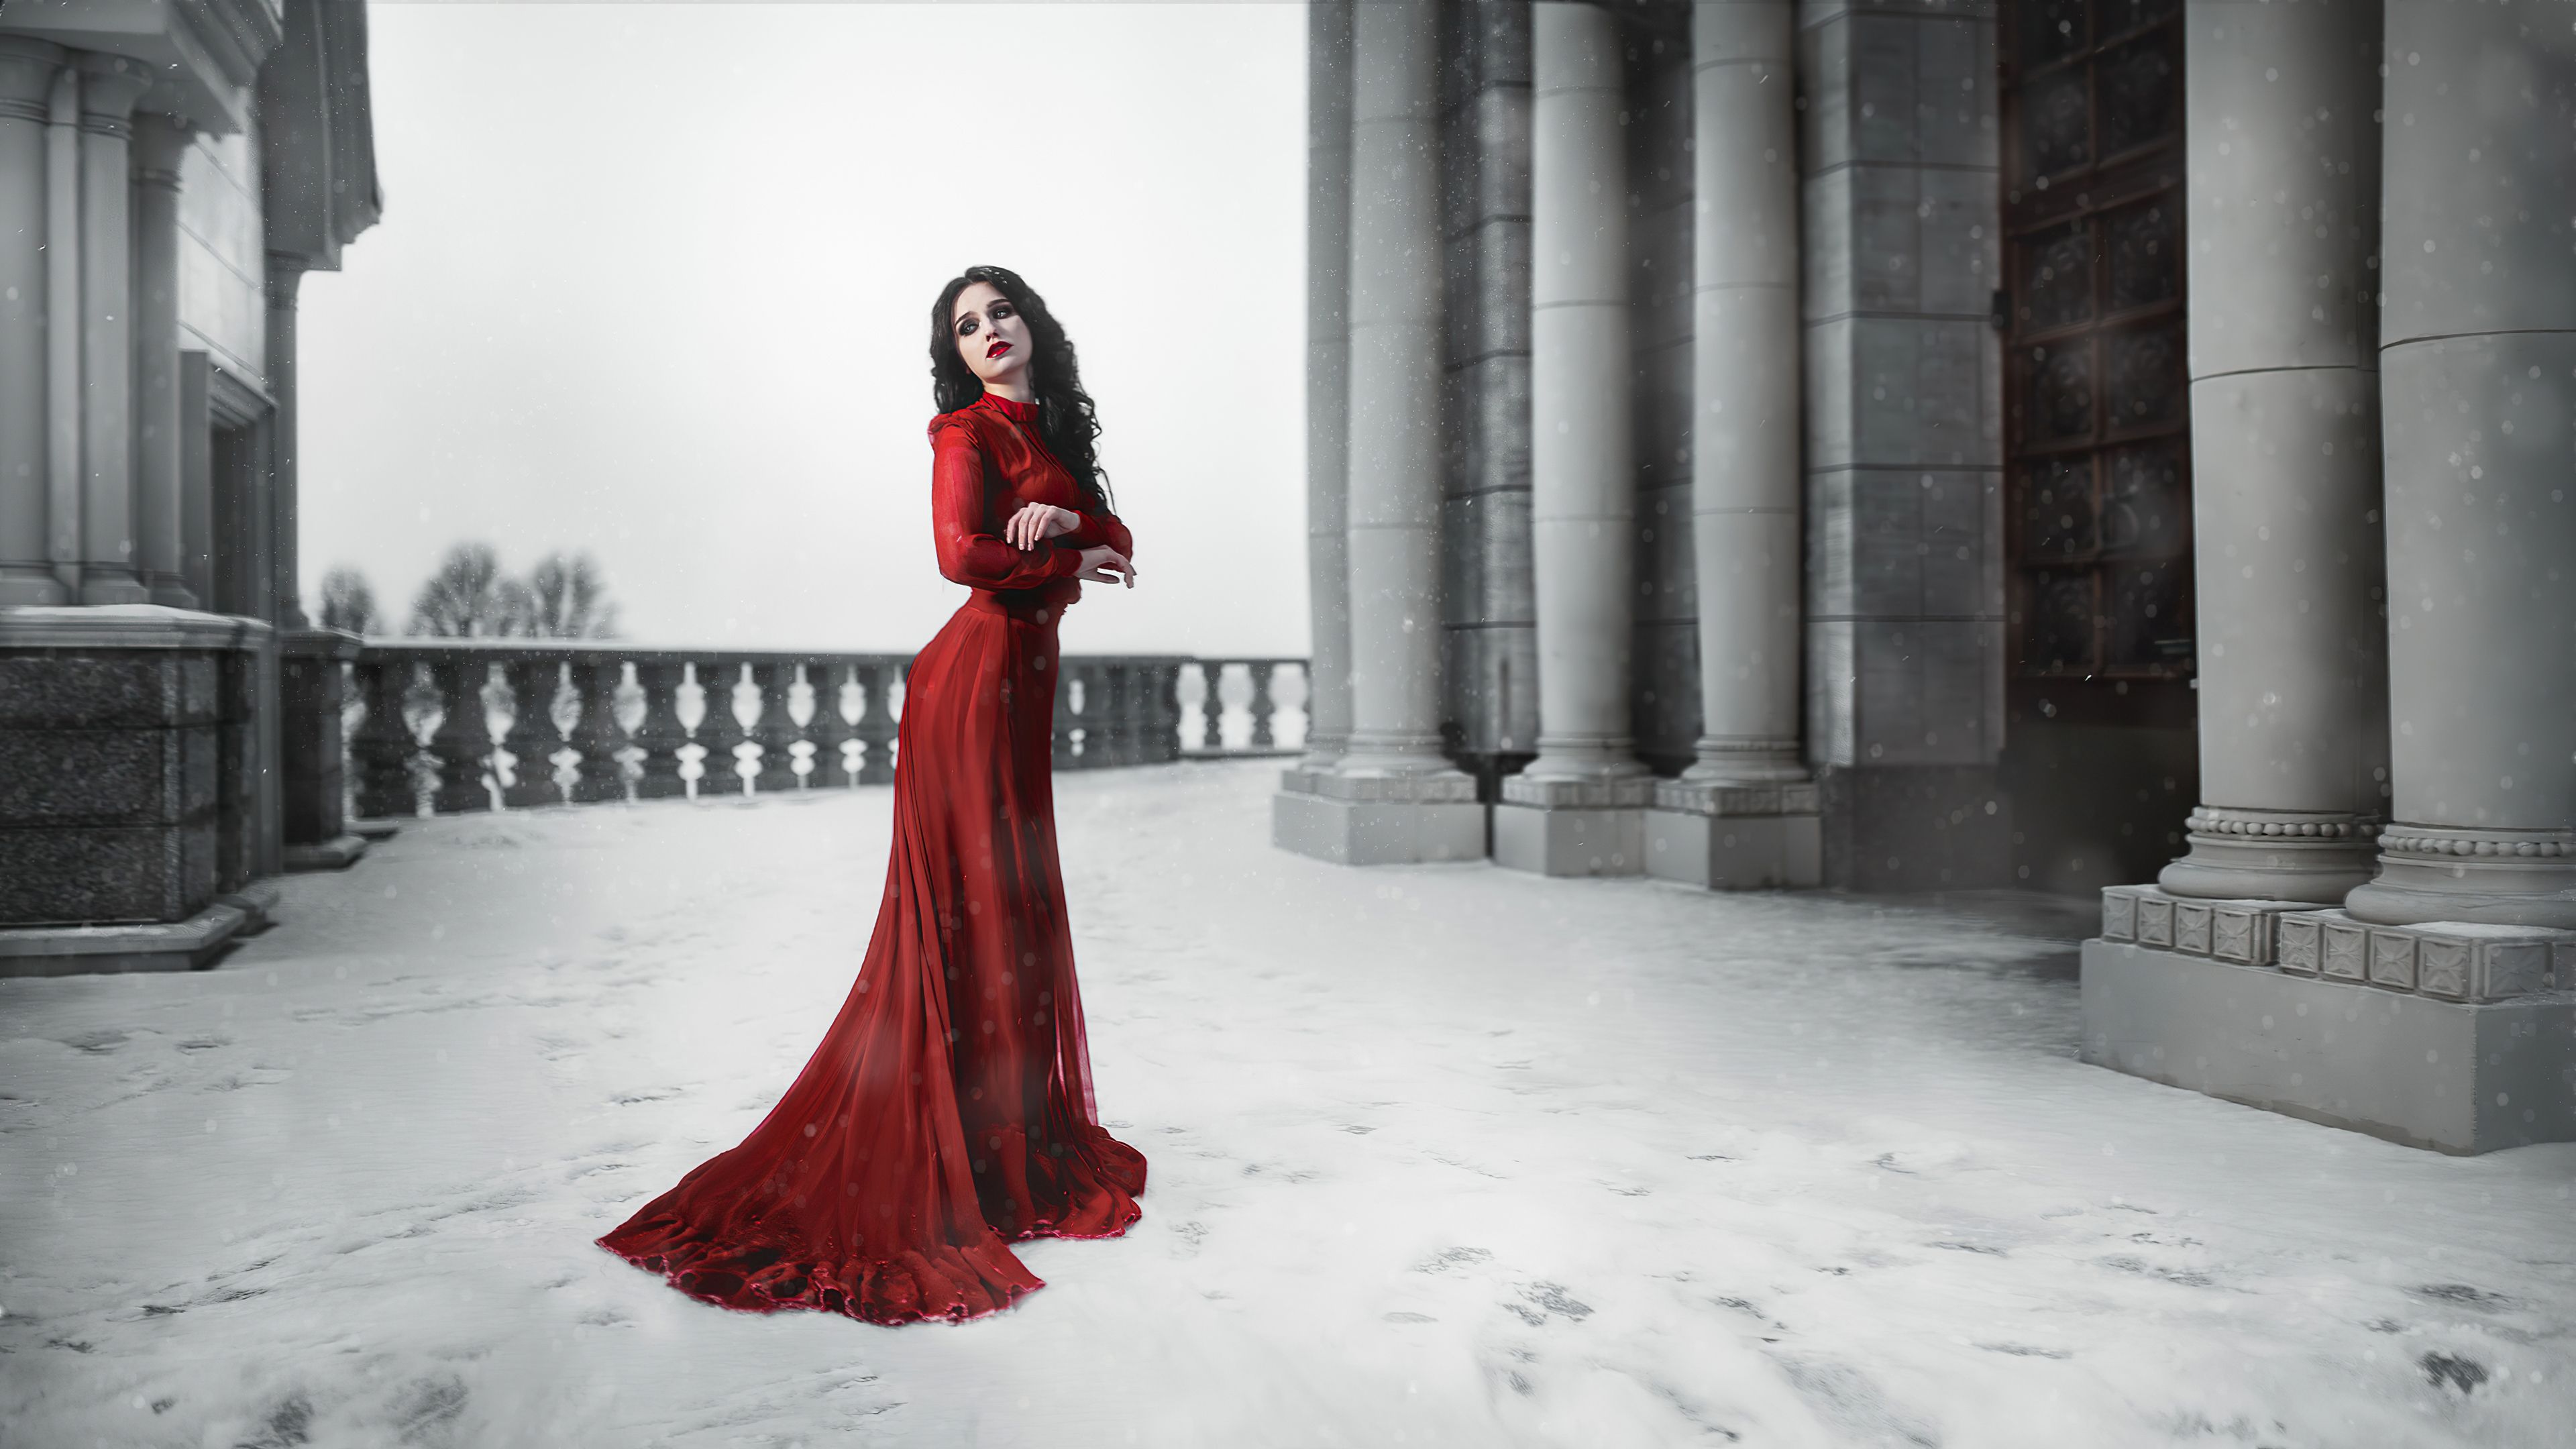 Girl Red Dress Snow Photohoot Sony Xperia X, XZ, Z5